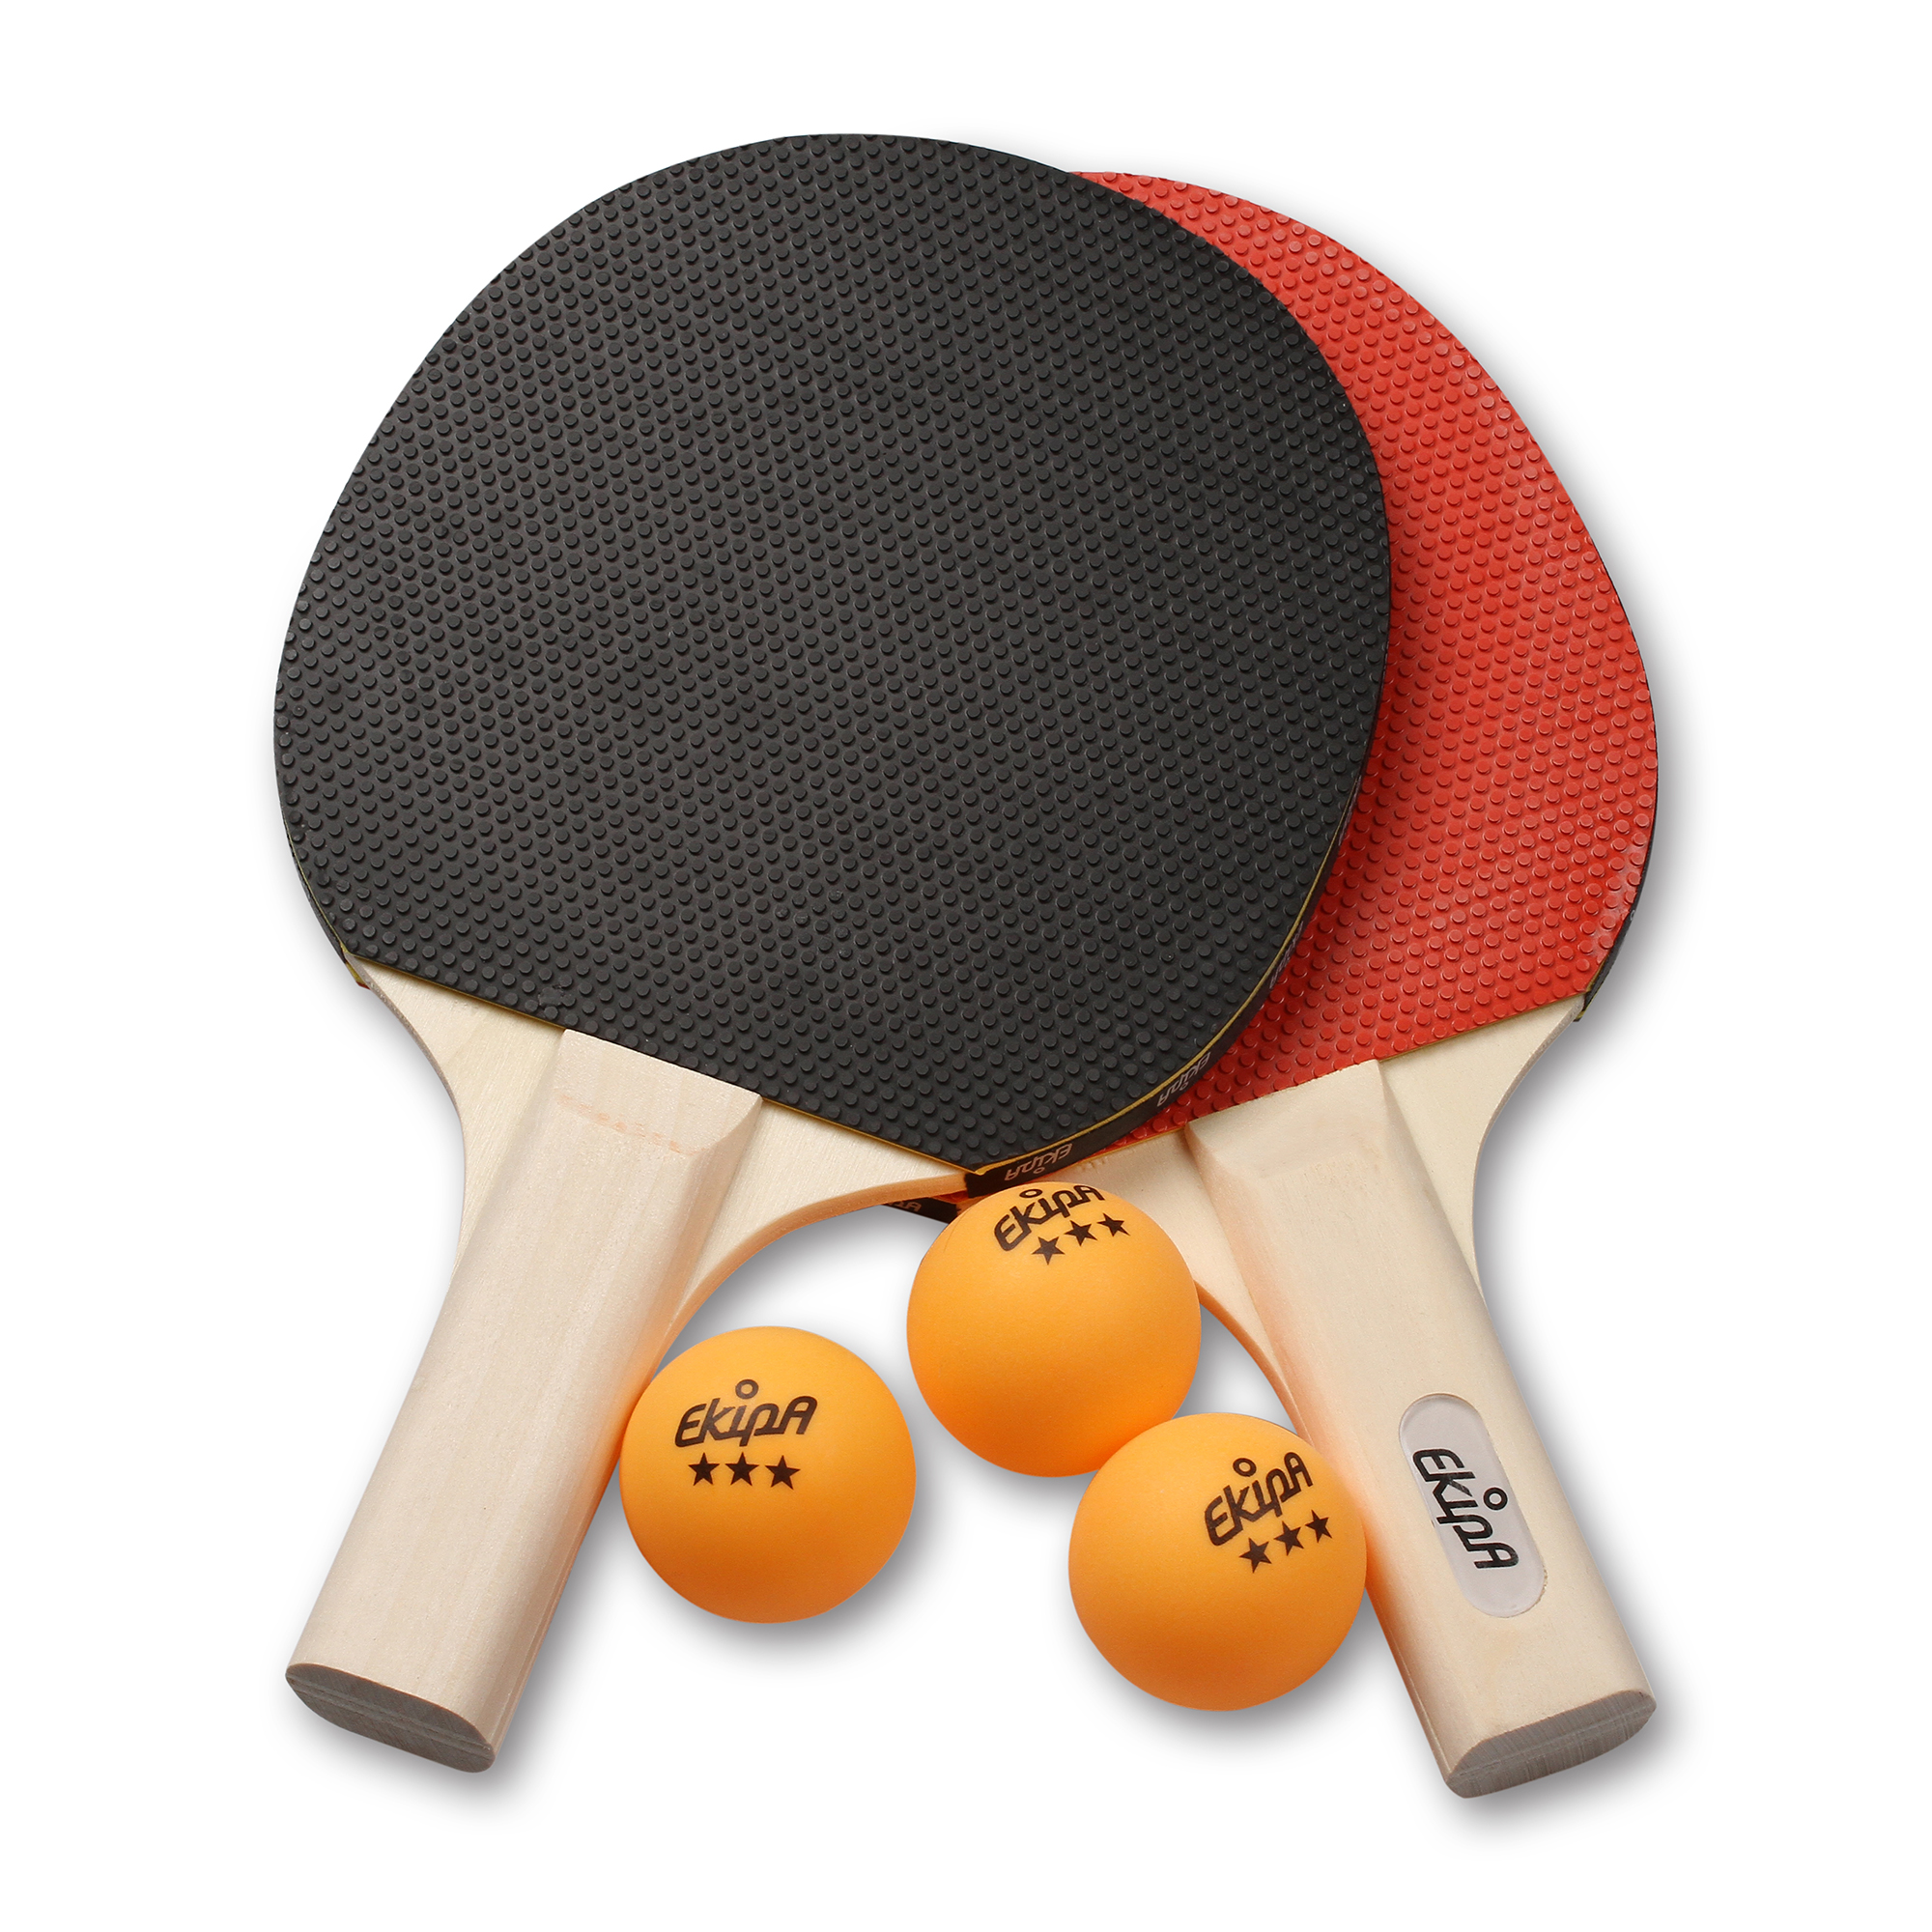 Настольный теннис ракетки и шарики. Atemi 600 ракетка для настольного тенниса 3 звезды. Ракетка RBV 4002h для настольного тенниса. Теннисная ракетка атеми. Набор для настольного тенниса (2 ракетки, 3 шарика).